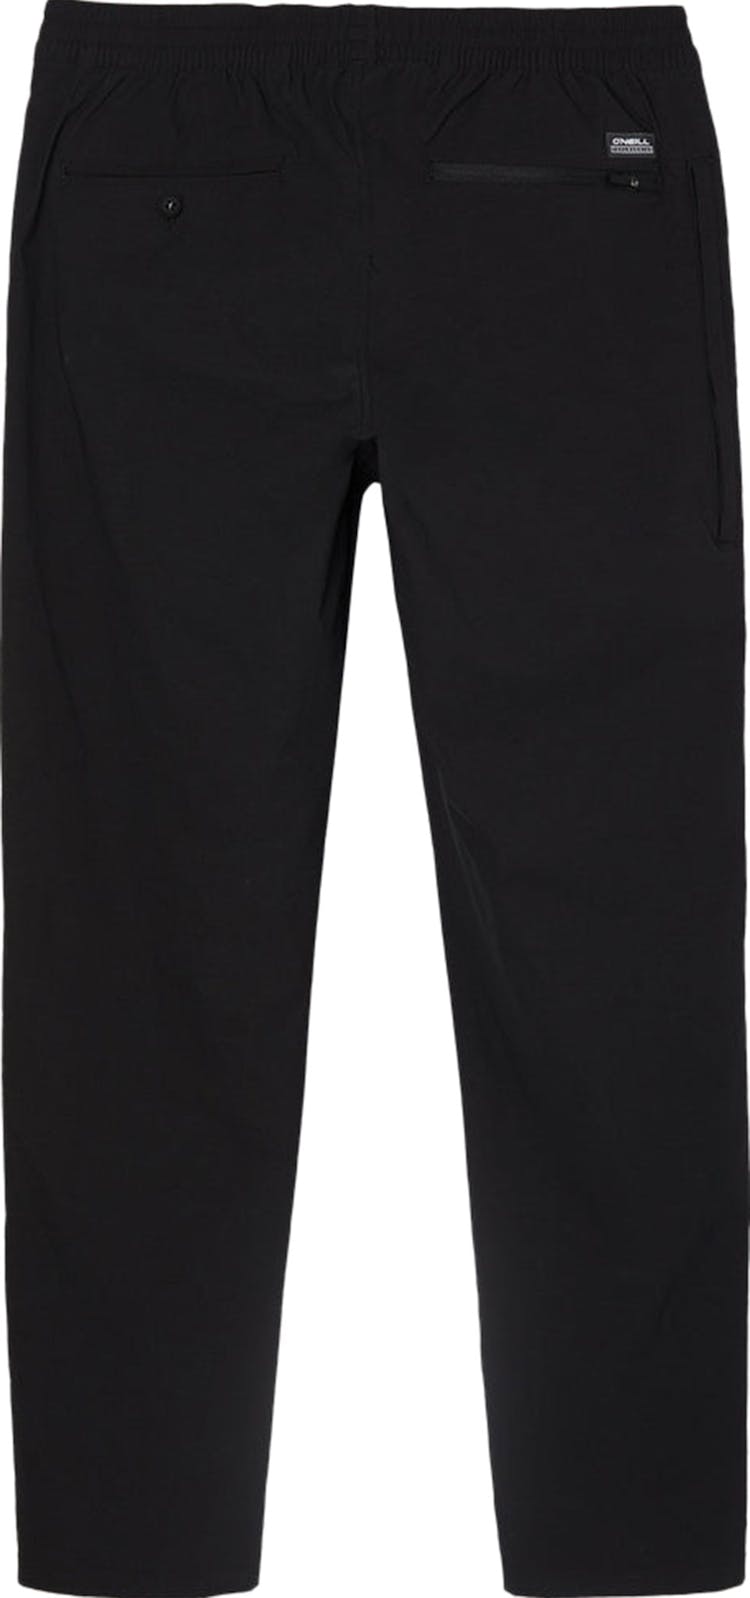 Numéro de l'image de la galerie de produits 4 pour le produit Pantalon hybride TRVLR Coast - Homme